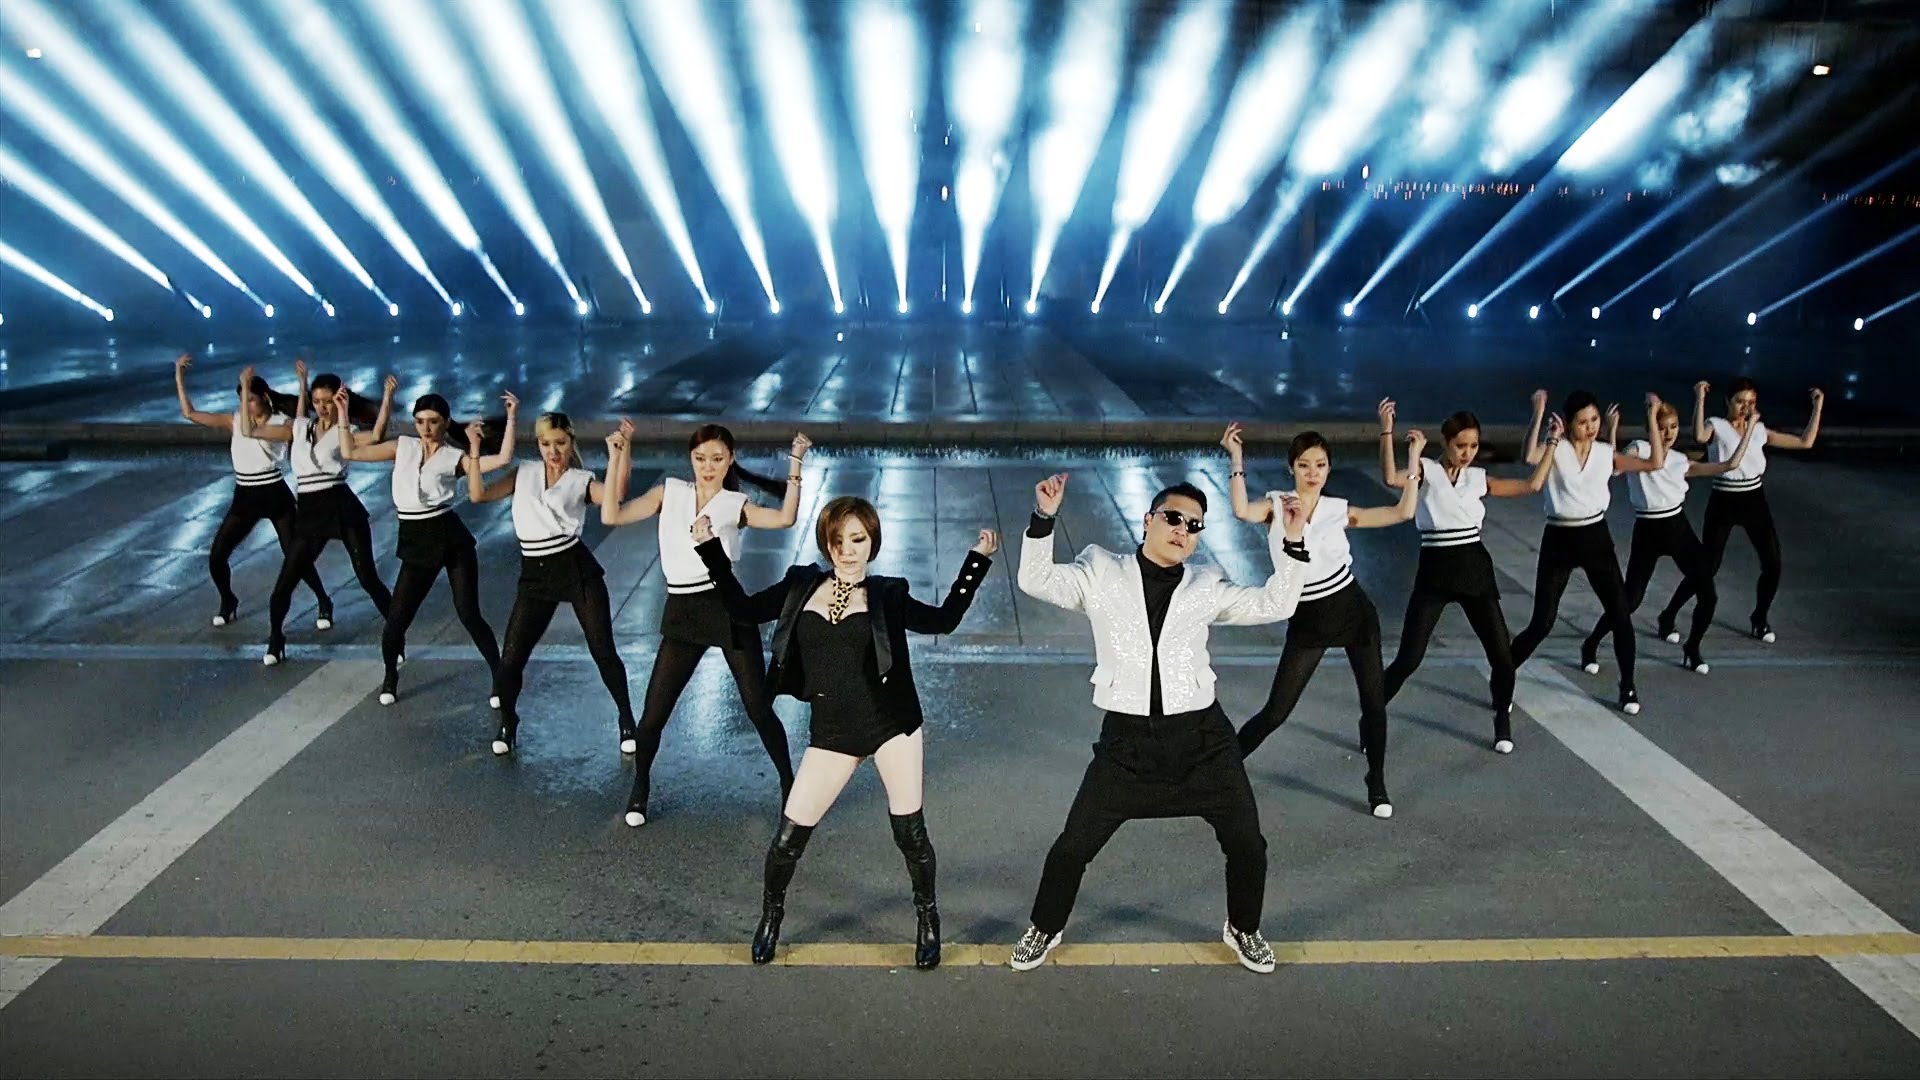 psy, Gangnam, Style, Korean, Singer, Songwriter, Rapper, Dancer, Pop, Dance Wallpaper